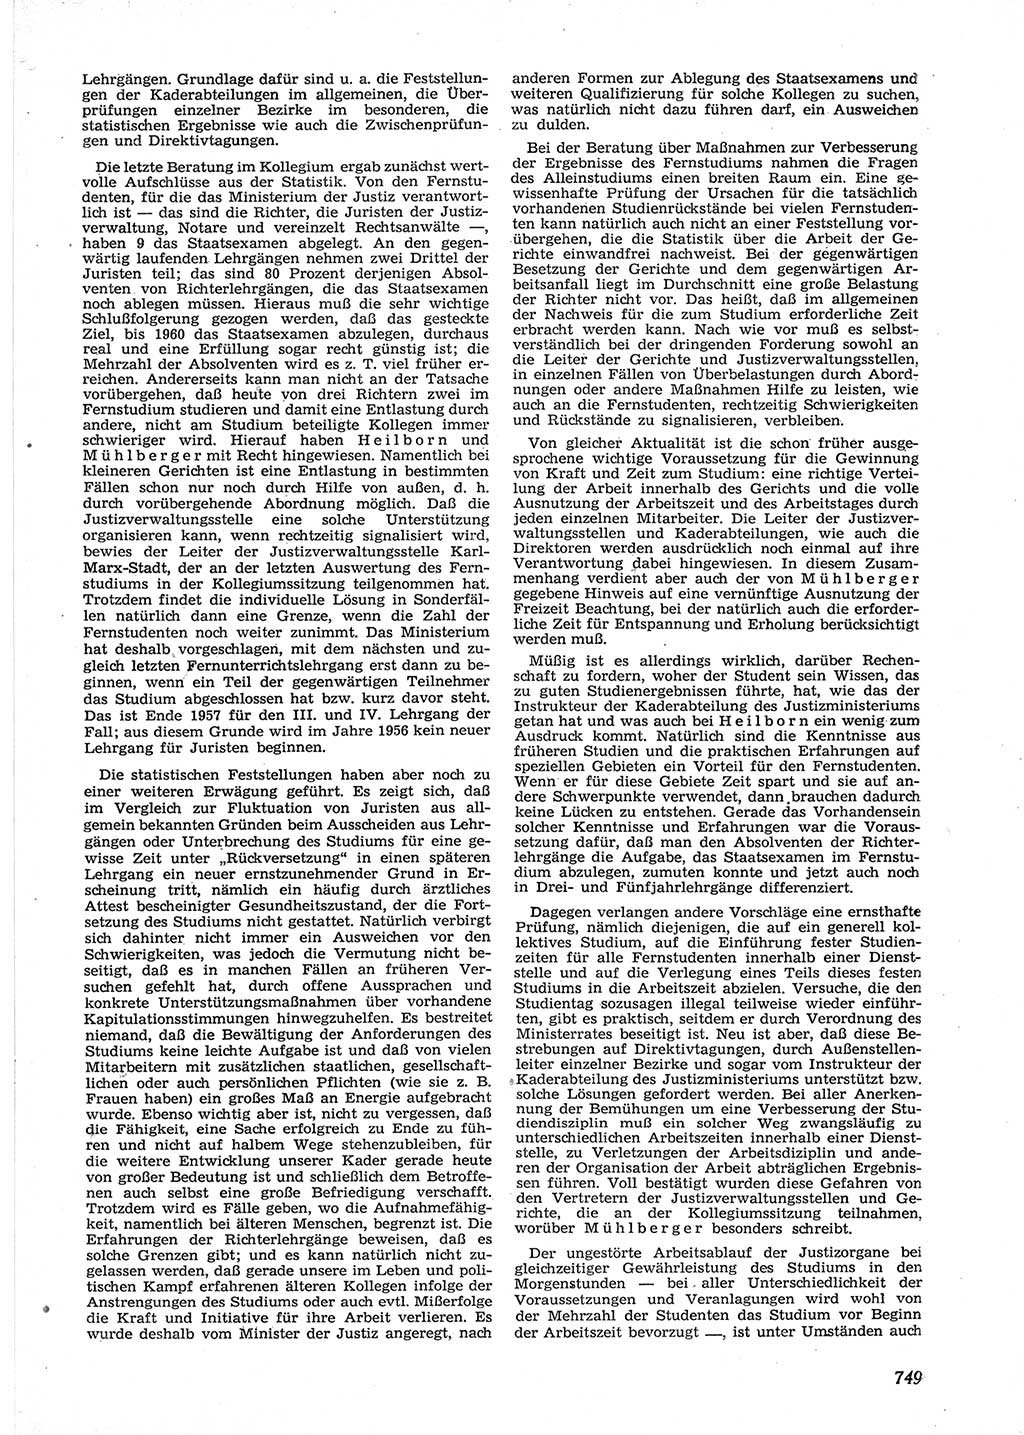 Neue Justiz (NJ), Zeitschrift für Recht und Rechtswissenschaft [Deutsche Demokratische Republik (DDR)], 9. Jahrgang 1955, Seite 749 (NJ DDR 1955, S. 749)